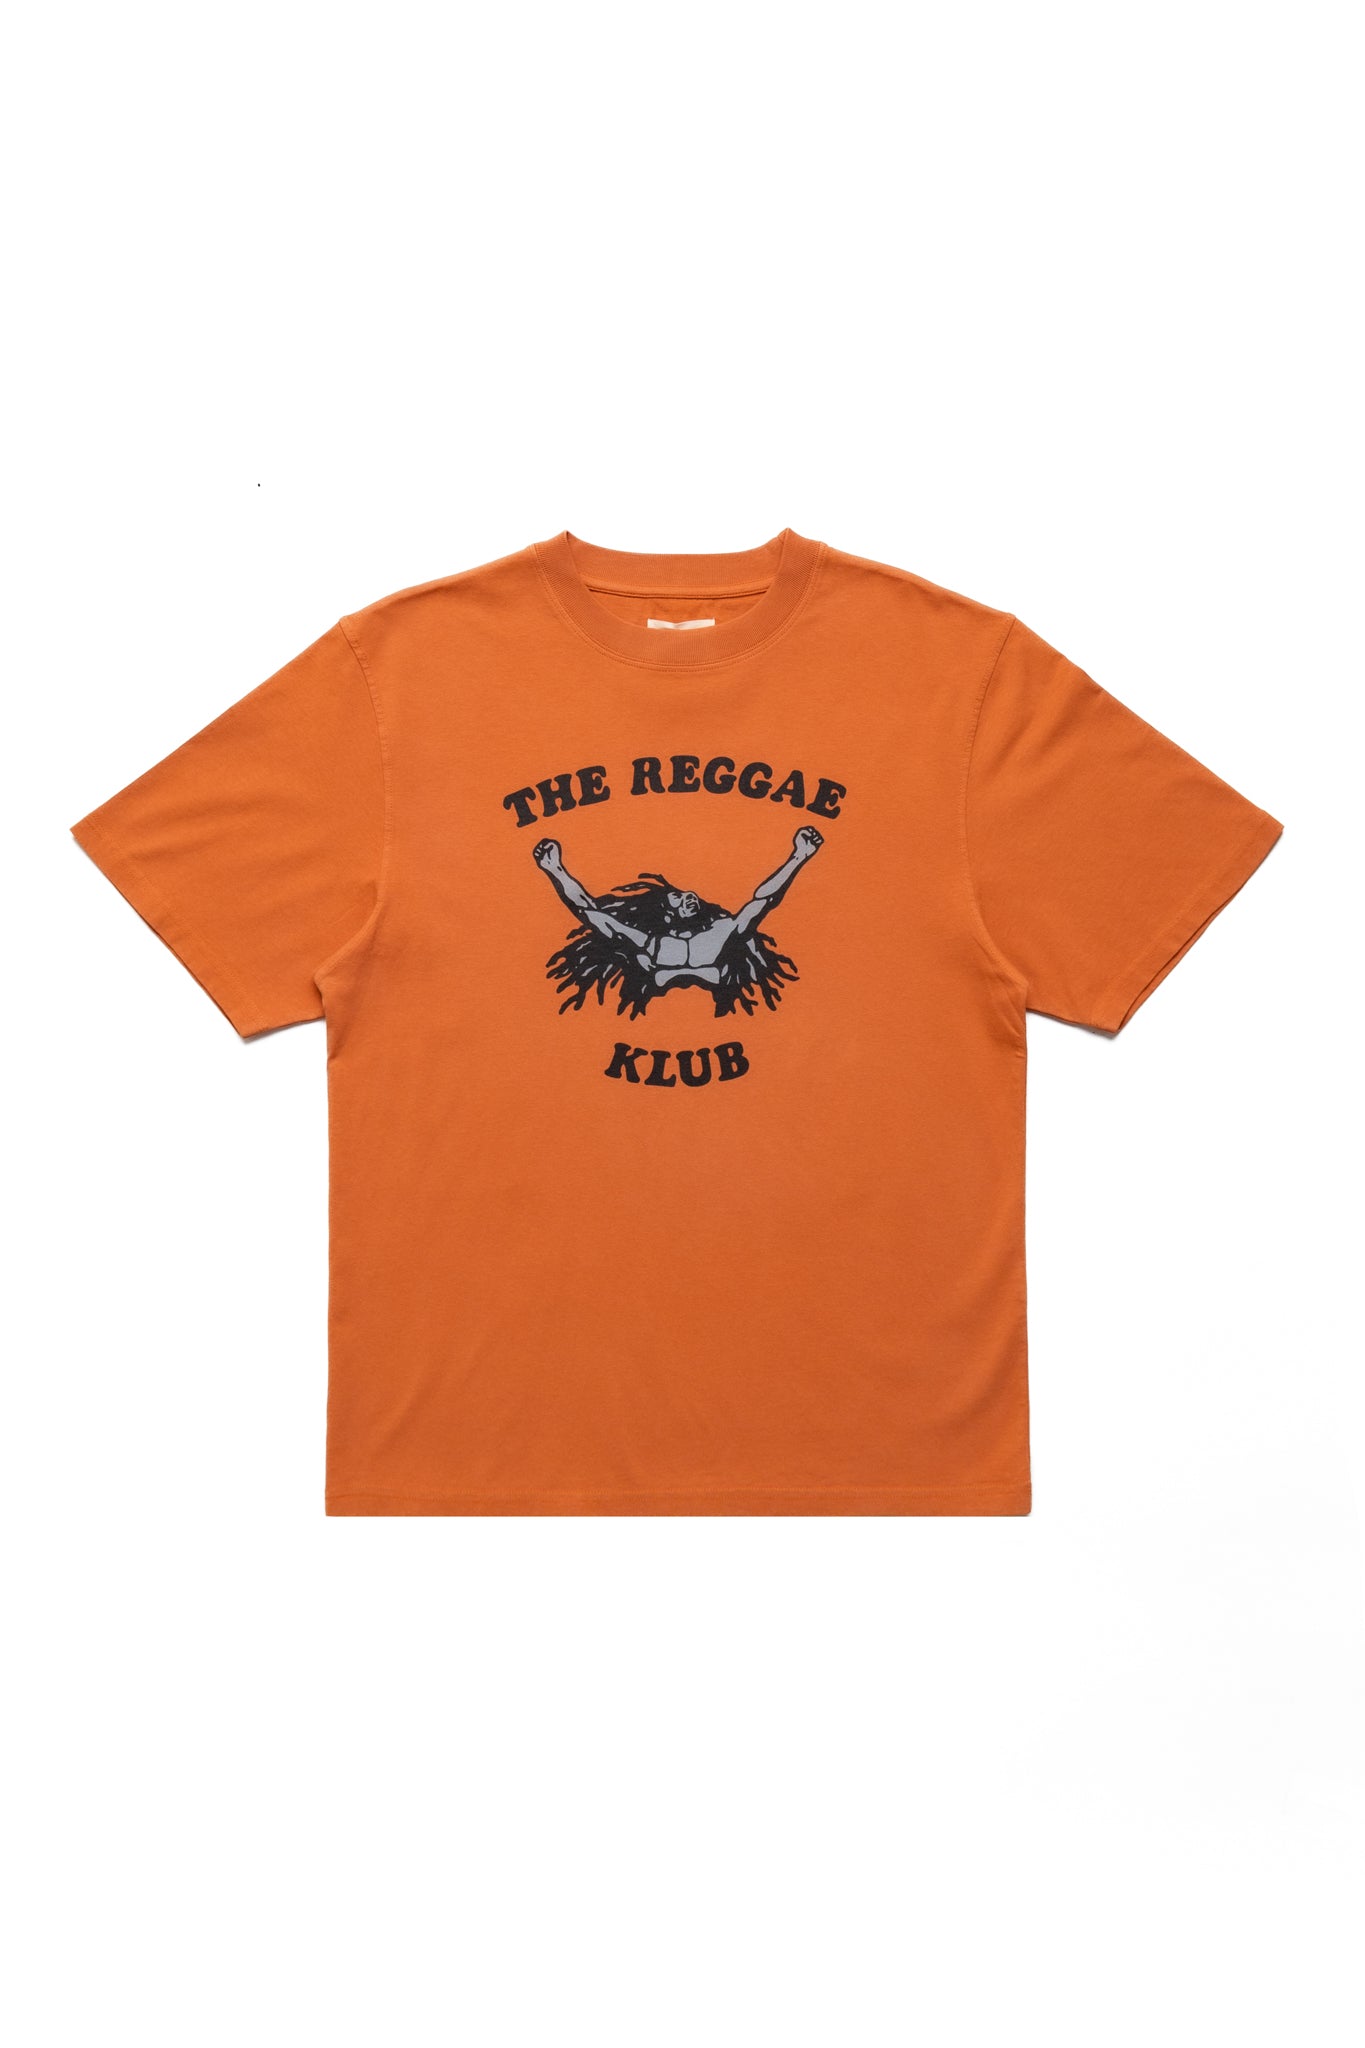 S/S Reggae Klub T-Shirt